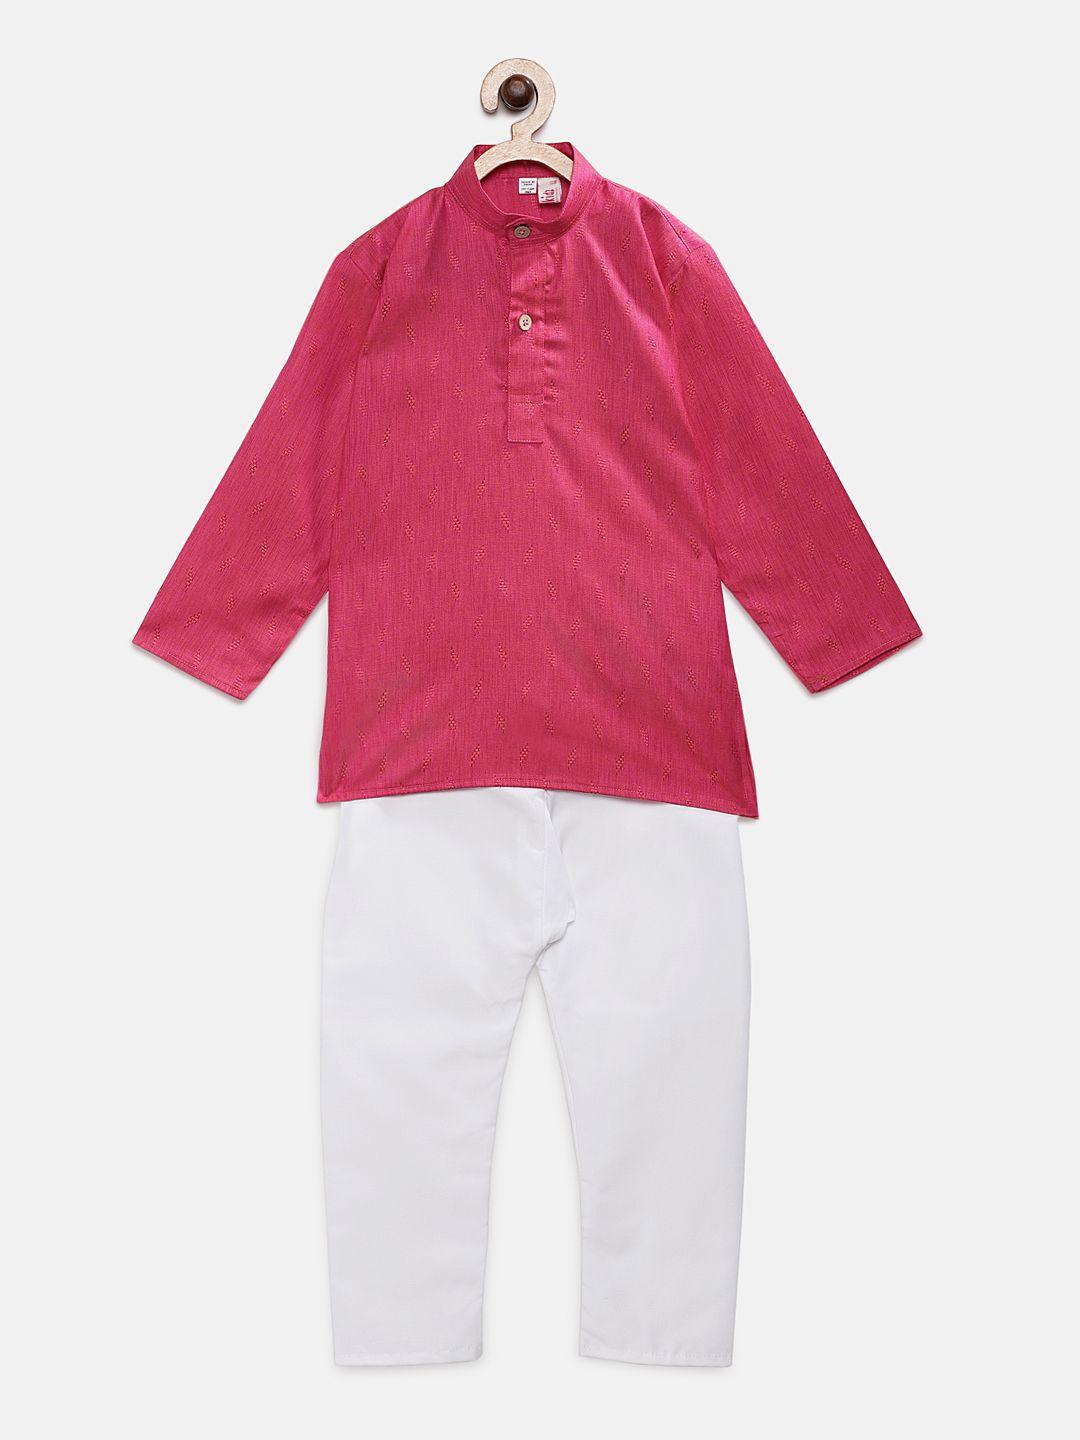 ridokidz boys pink & white woven design kurta with pyjamas